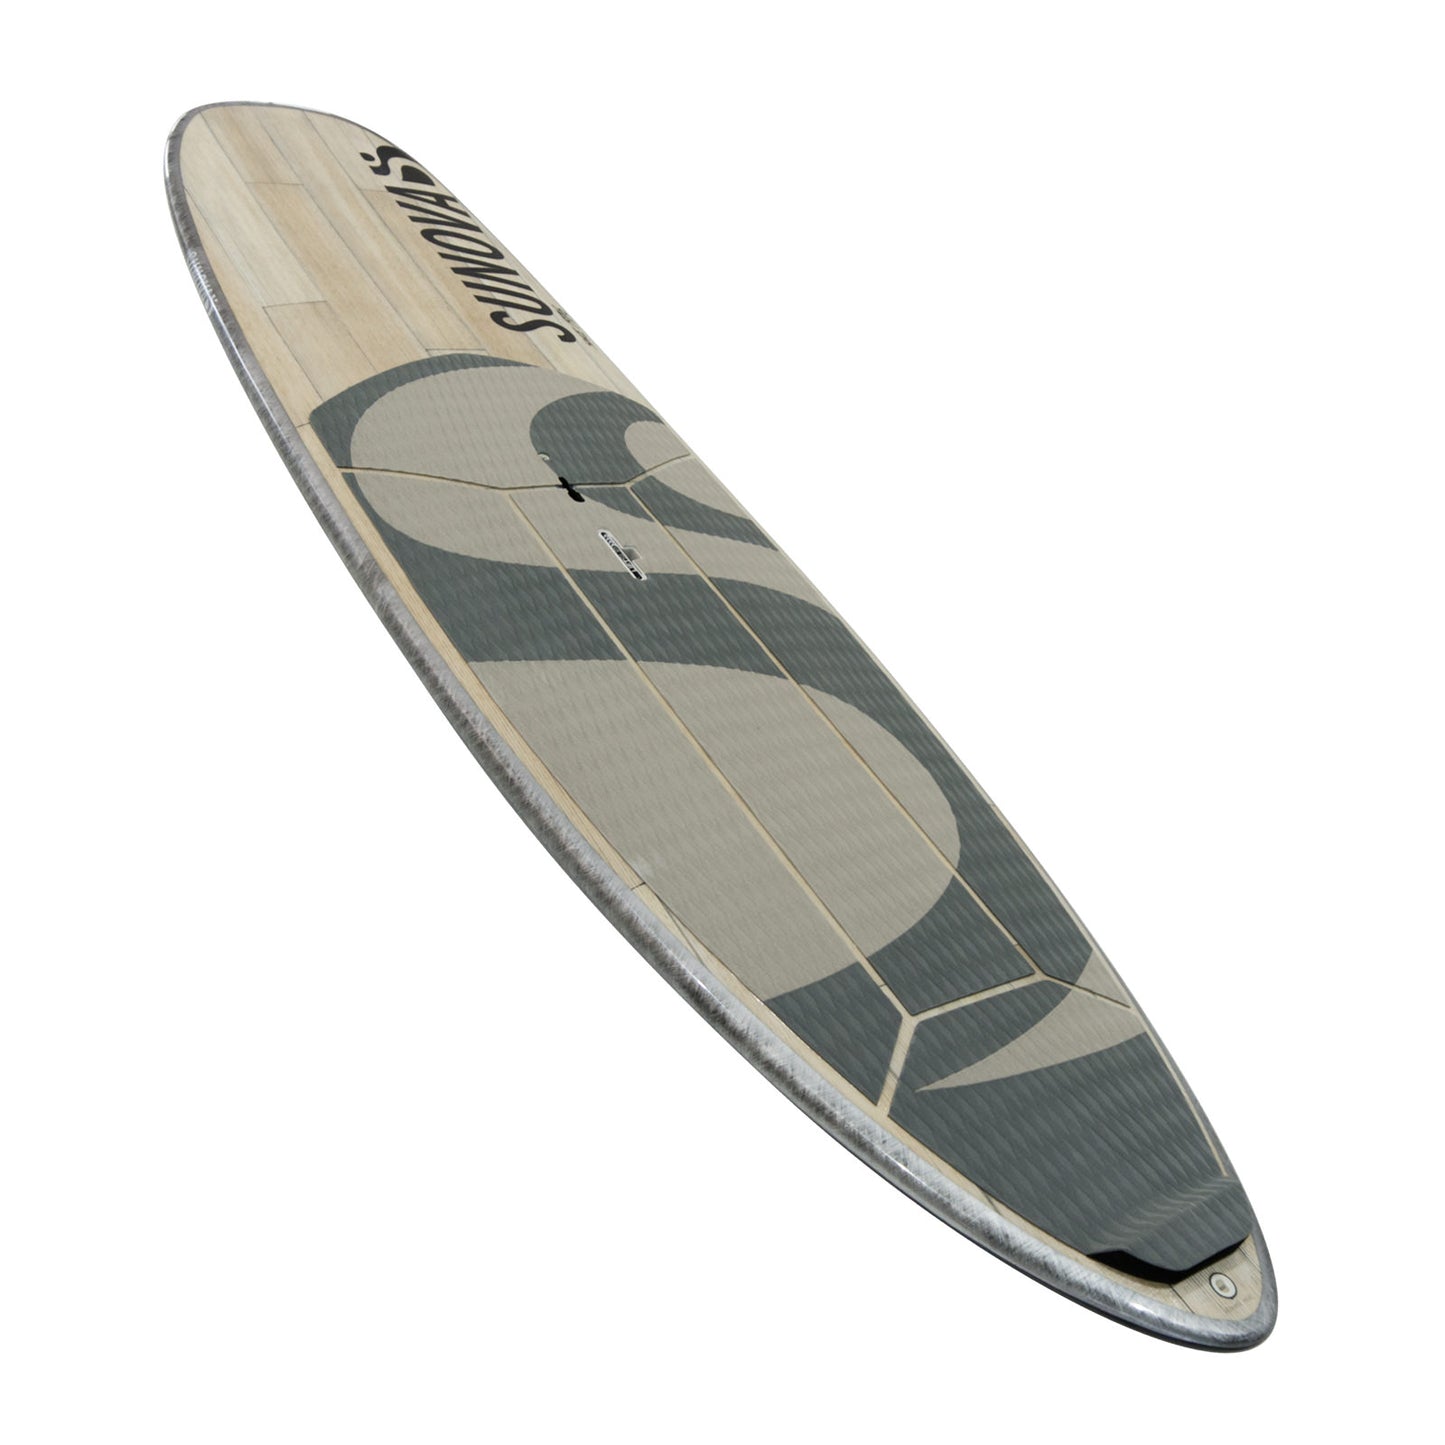 Perspektivische Heck Ansicht des Sunova Style Wave SUP Board in der XXX Bauweise.